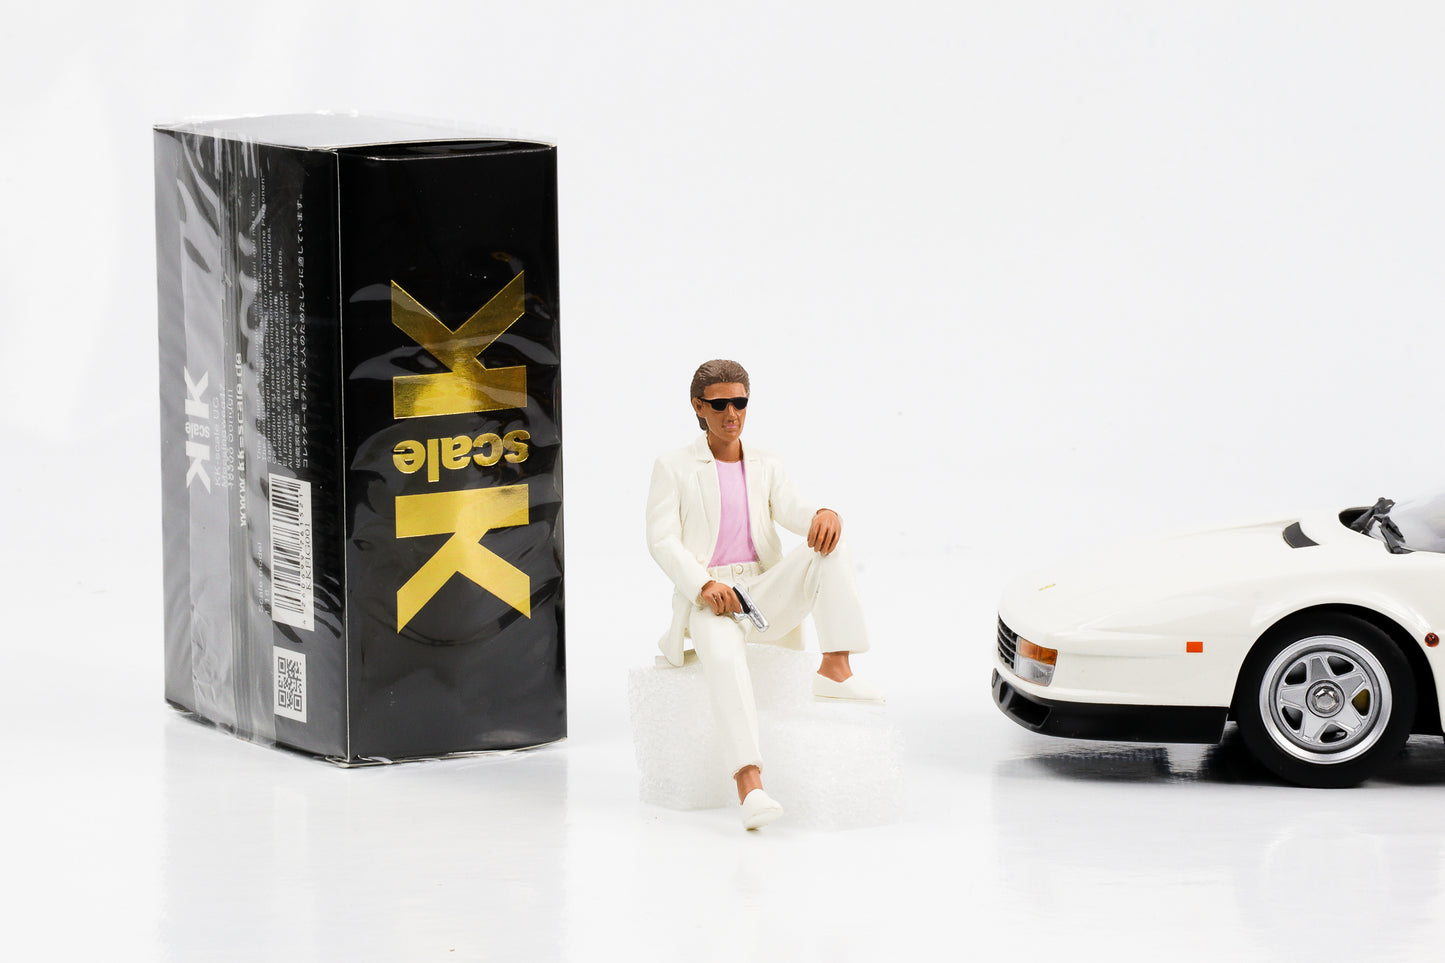 1:18 Figure Miami Vice Sonny Crockett Sitting Movie KK Scale Figures